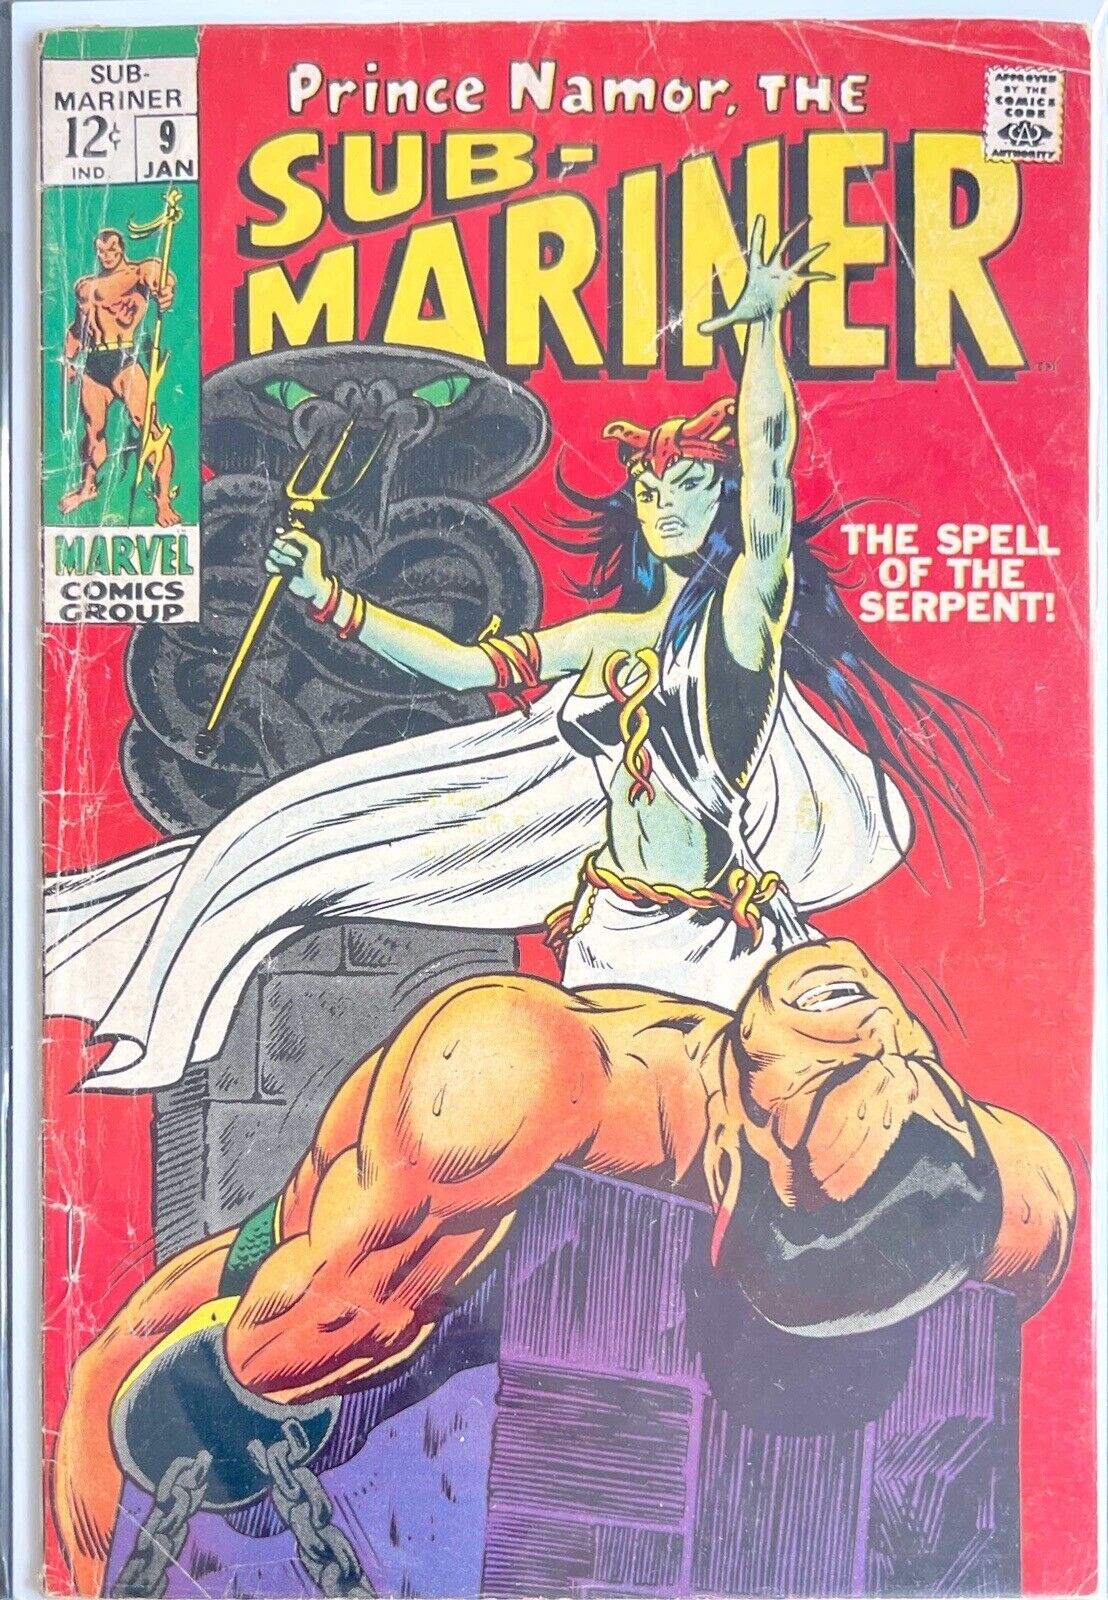 1969 Marvel Comics Sub-Mariner #9